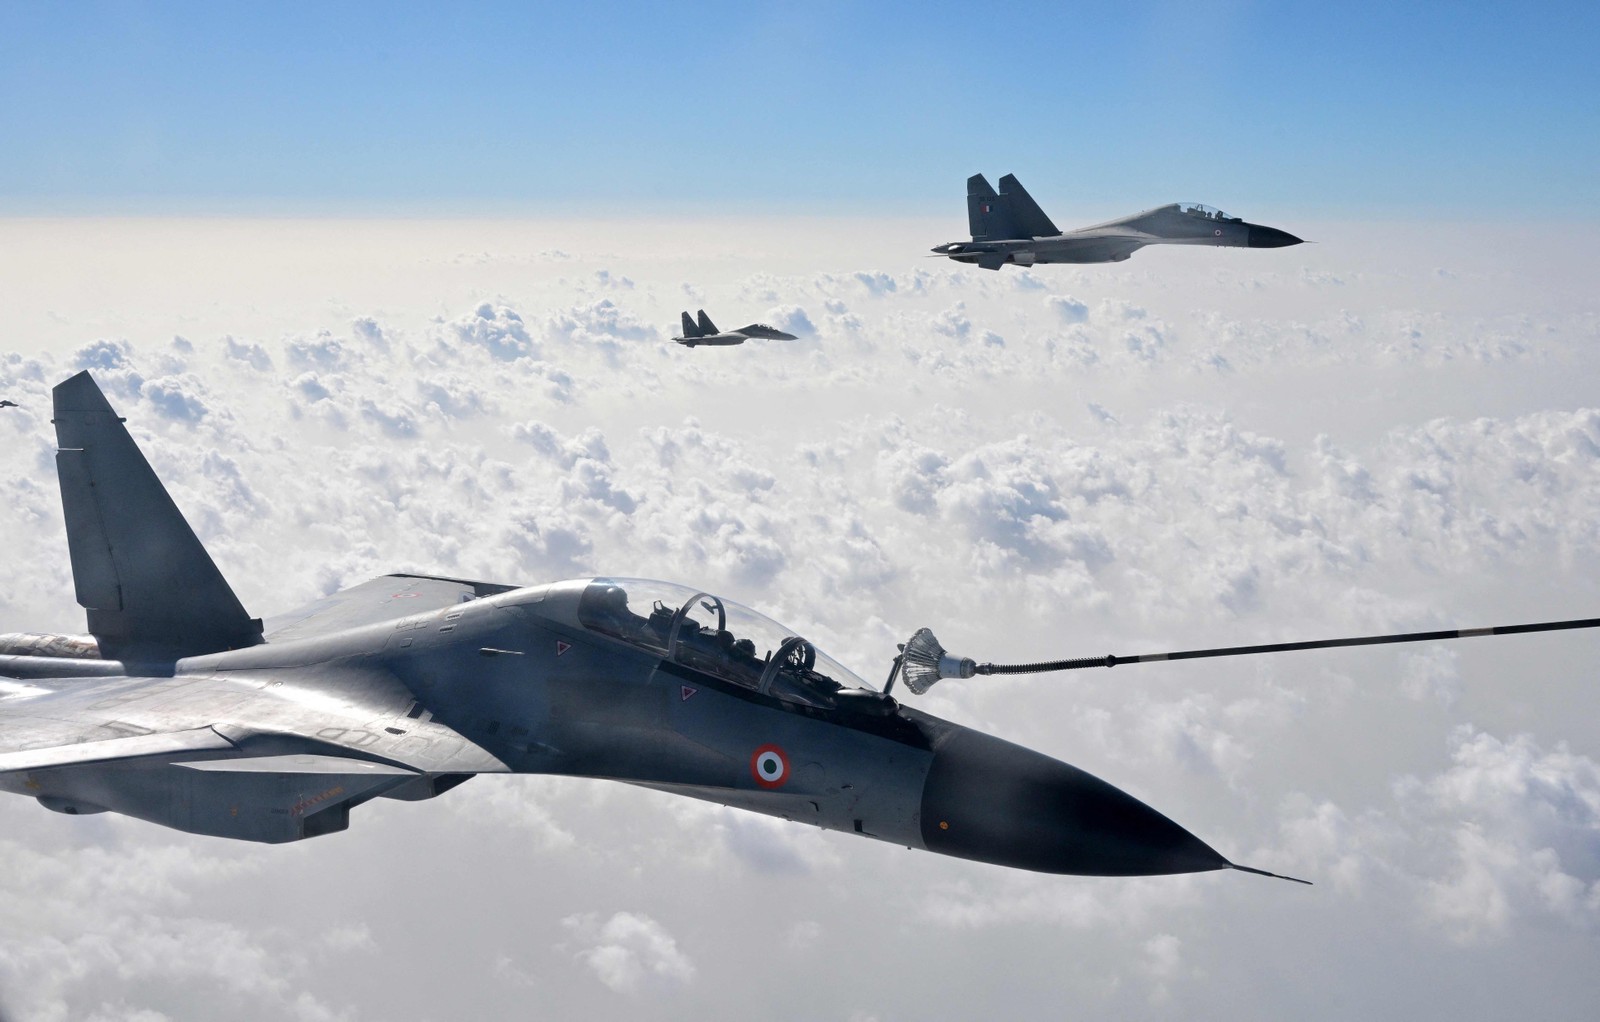 Força Aérea Indiana participa de exercício conjunto com a Força Aérea Francesa em Rajasthan, estado desértico da Índia — Foto: EMMANUEL DUNAND/AFP